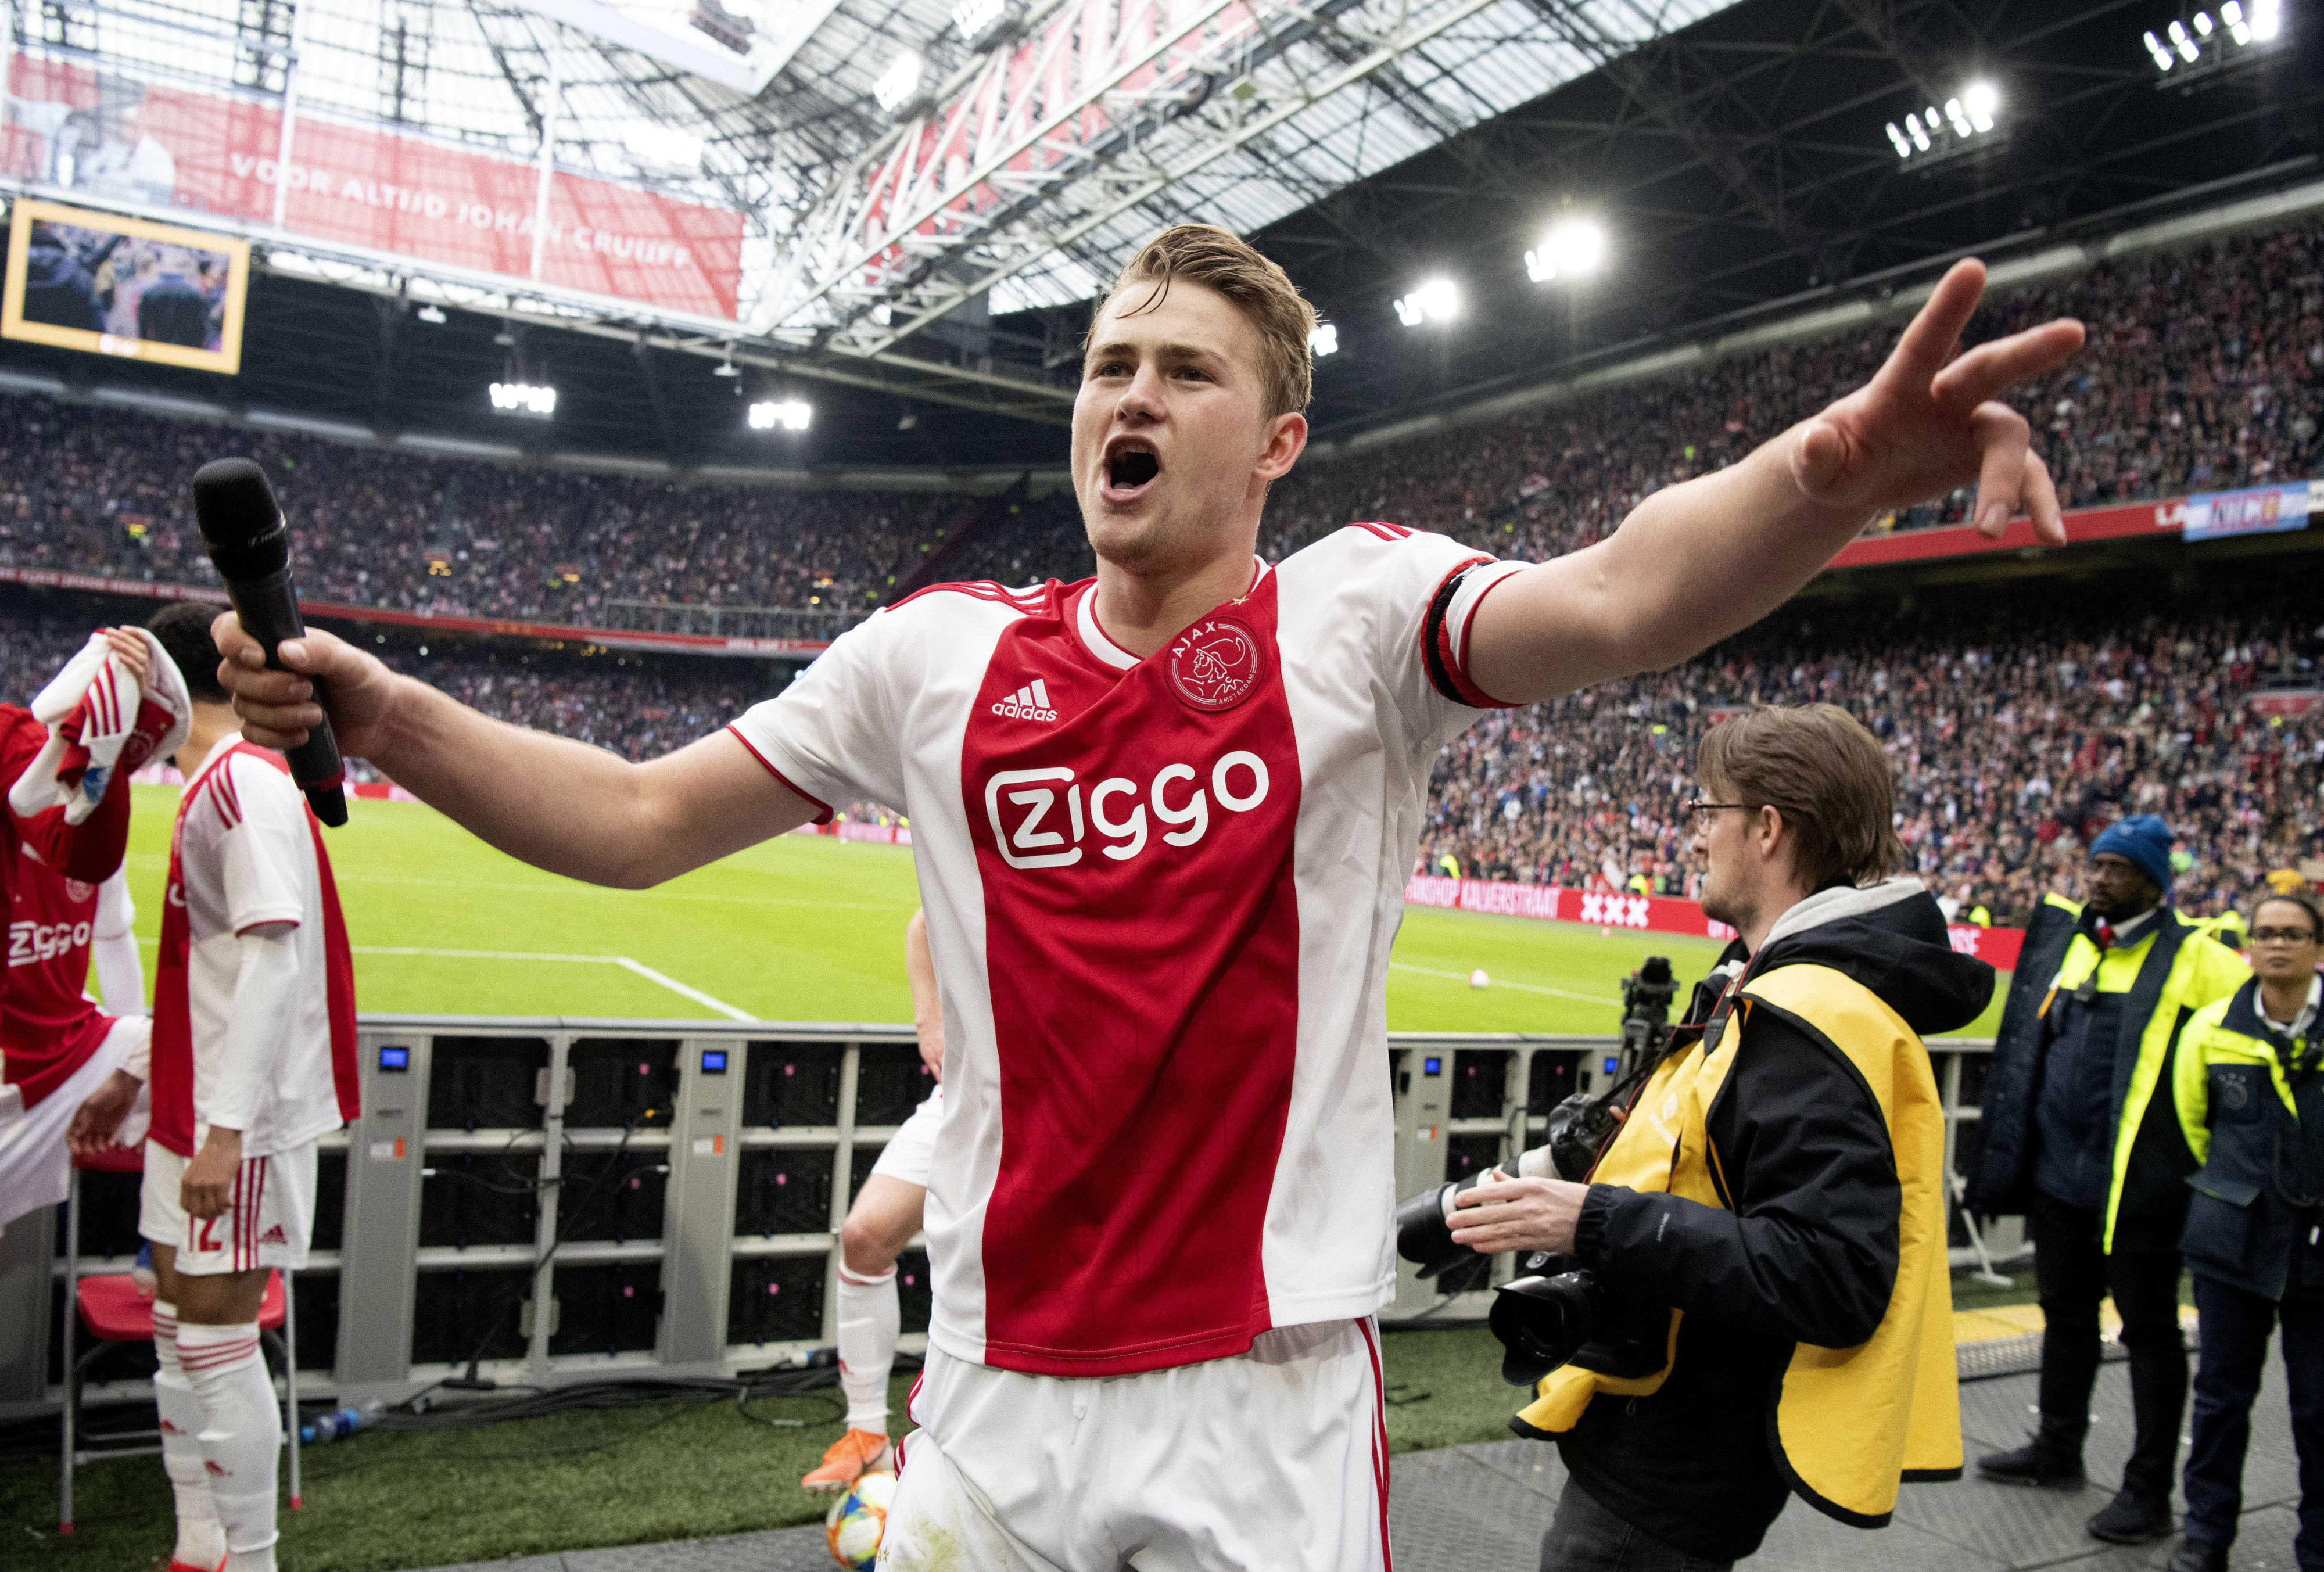 Matthijs de Ligt celebra una victoria del Ajax / EFE